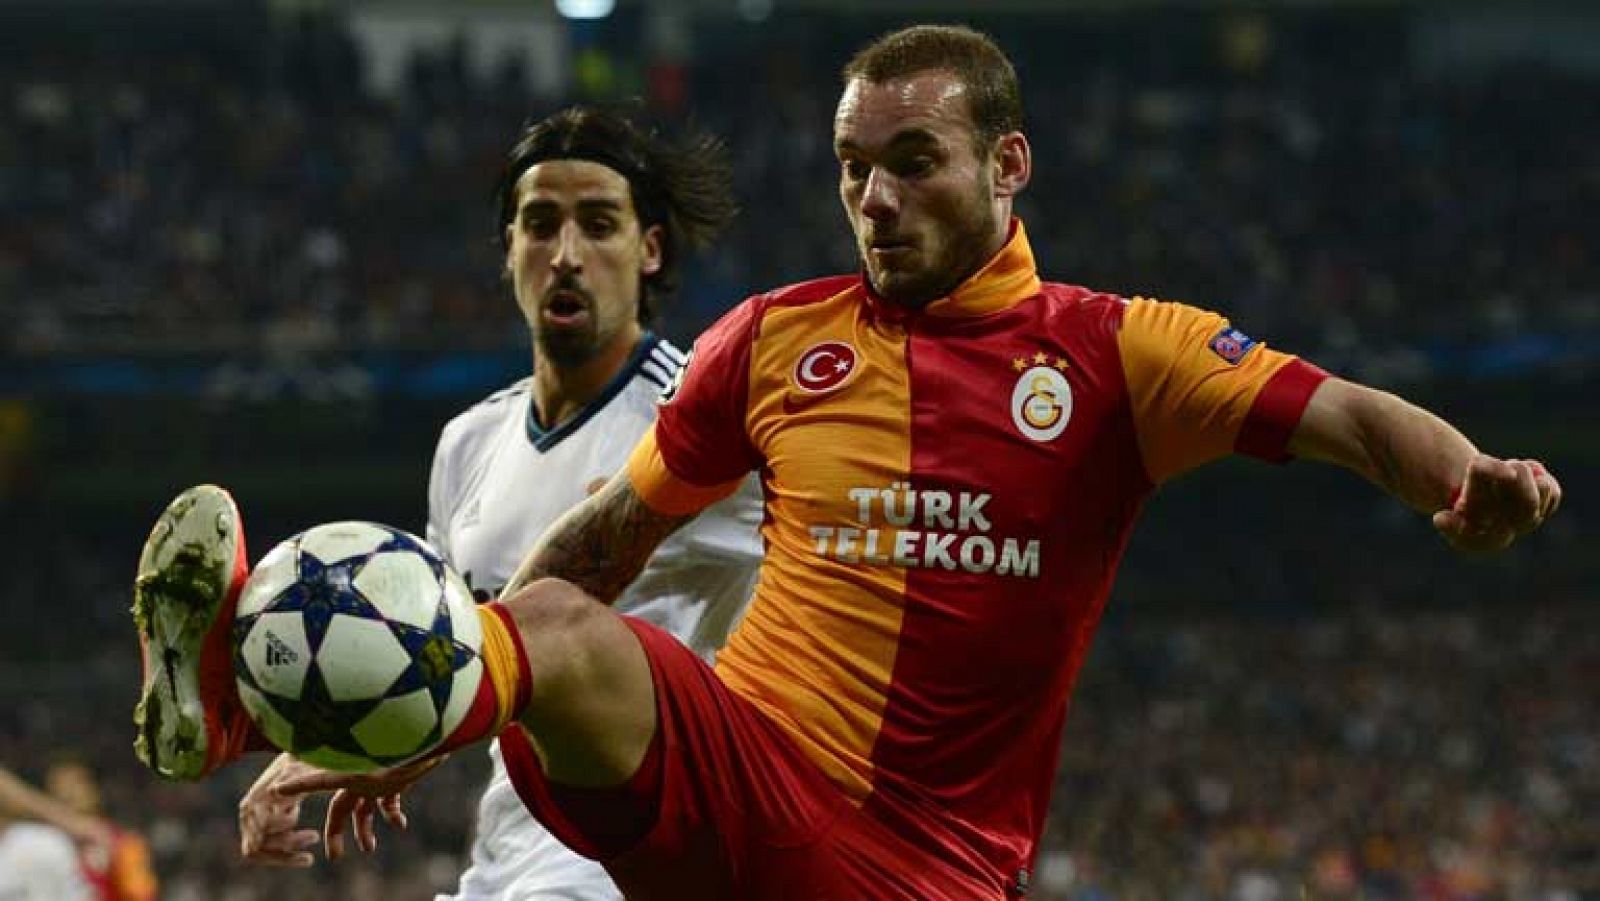 El jugador holandés del Galatasaray Sneijder ha adelantado a su equipo (2-1) en el minuto 70 de juego, tras superar con comodidad a la defensa madridista. 